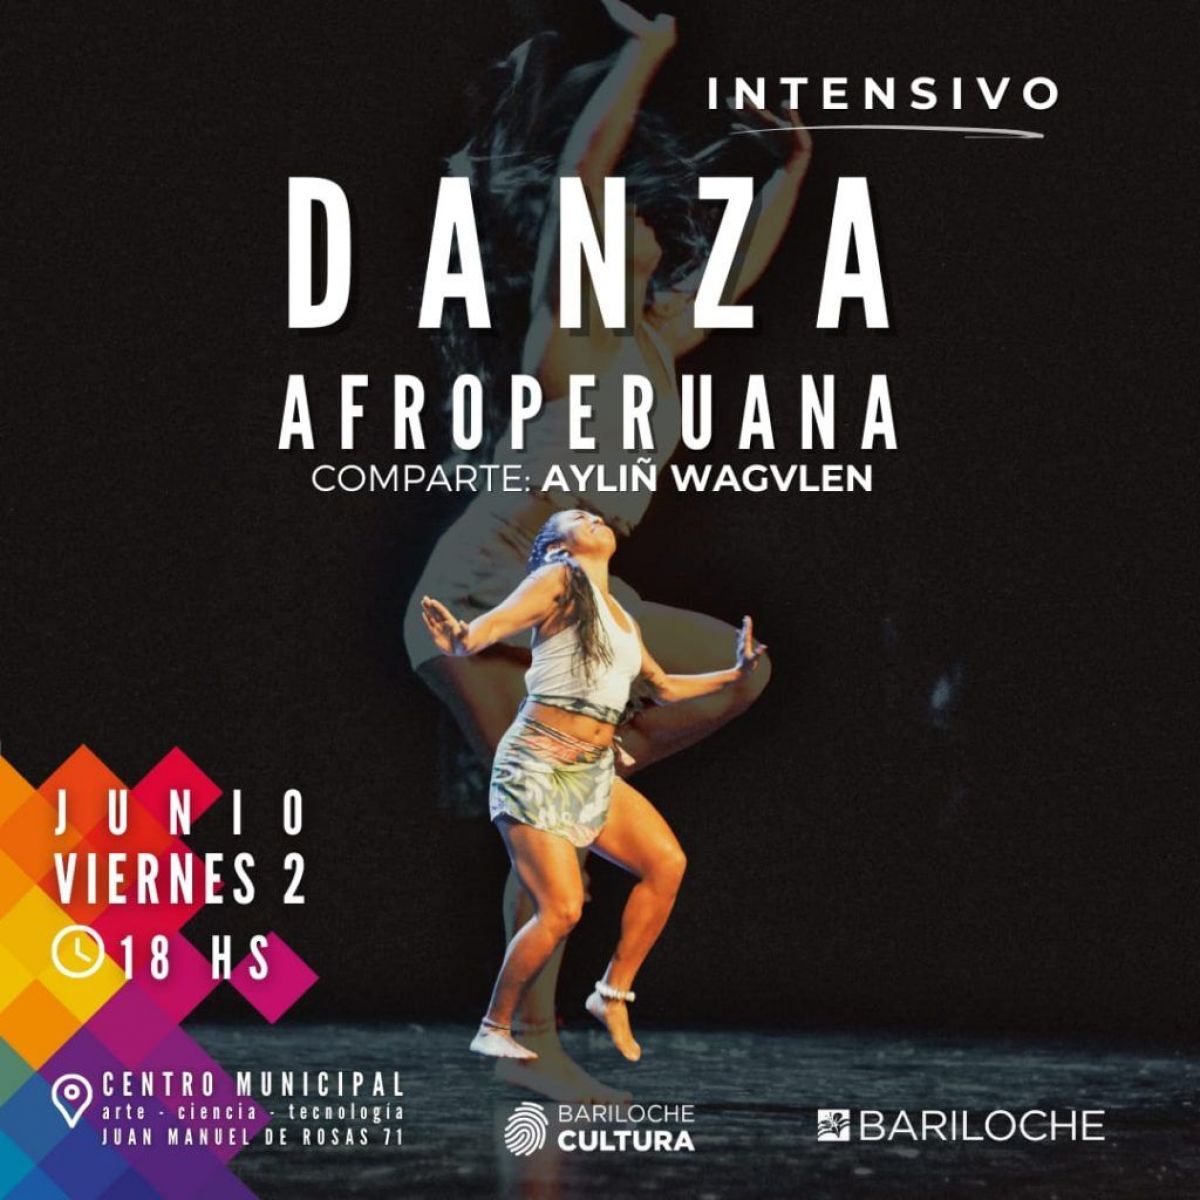 La Subsecretaría de Cultura invita a una clase intensiva de Danzas Afroperuanas